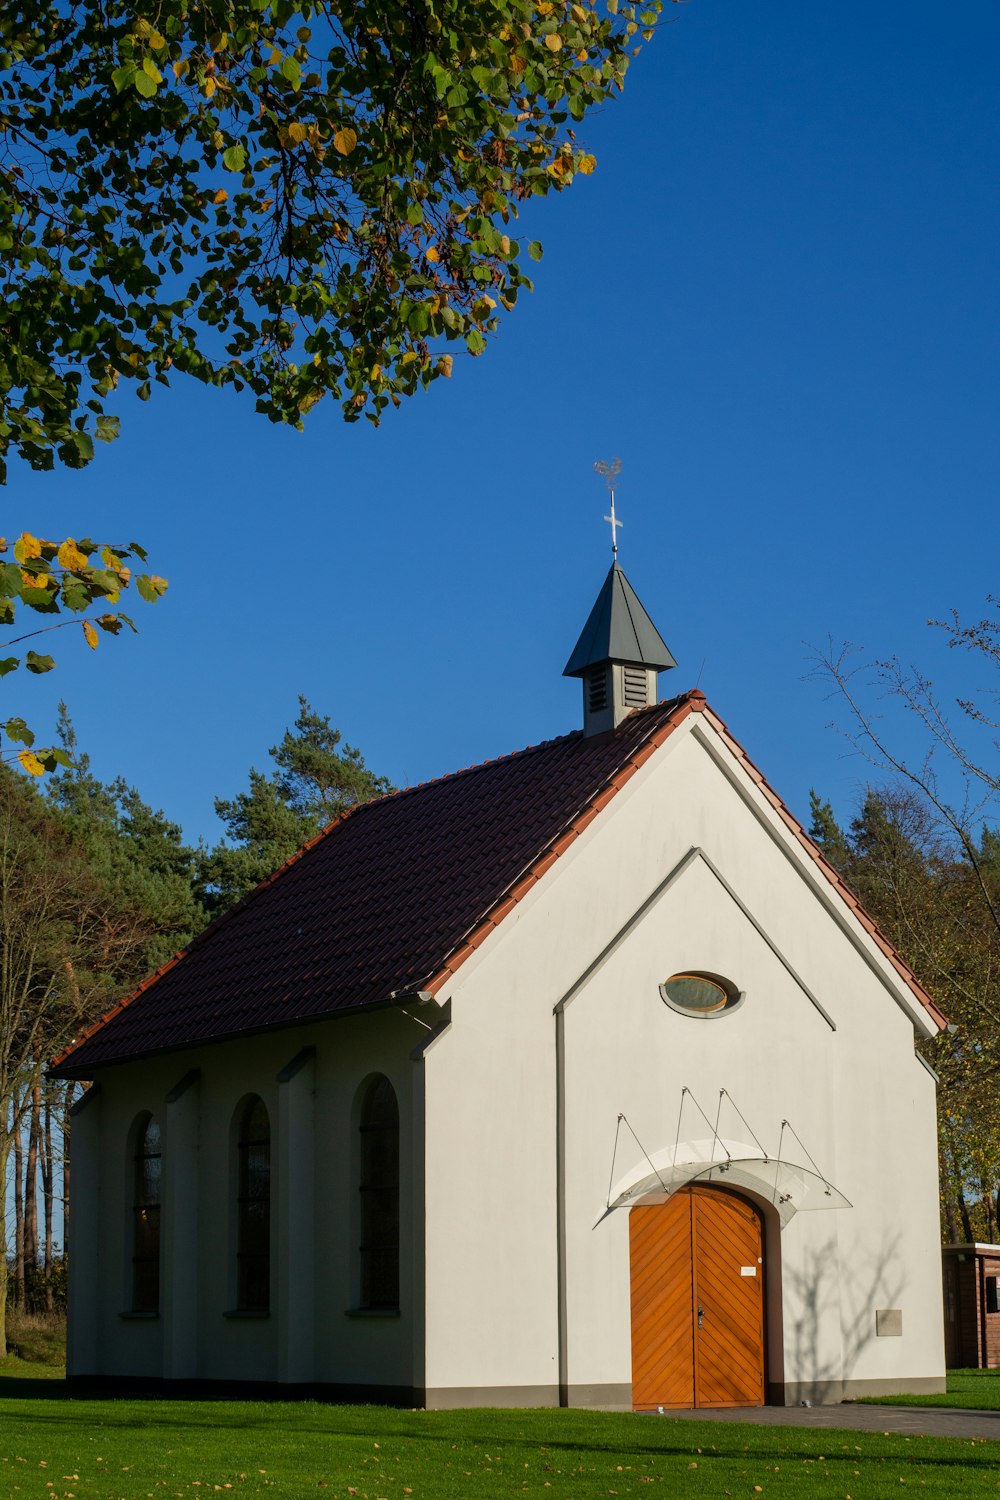 a small white church